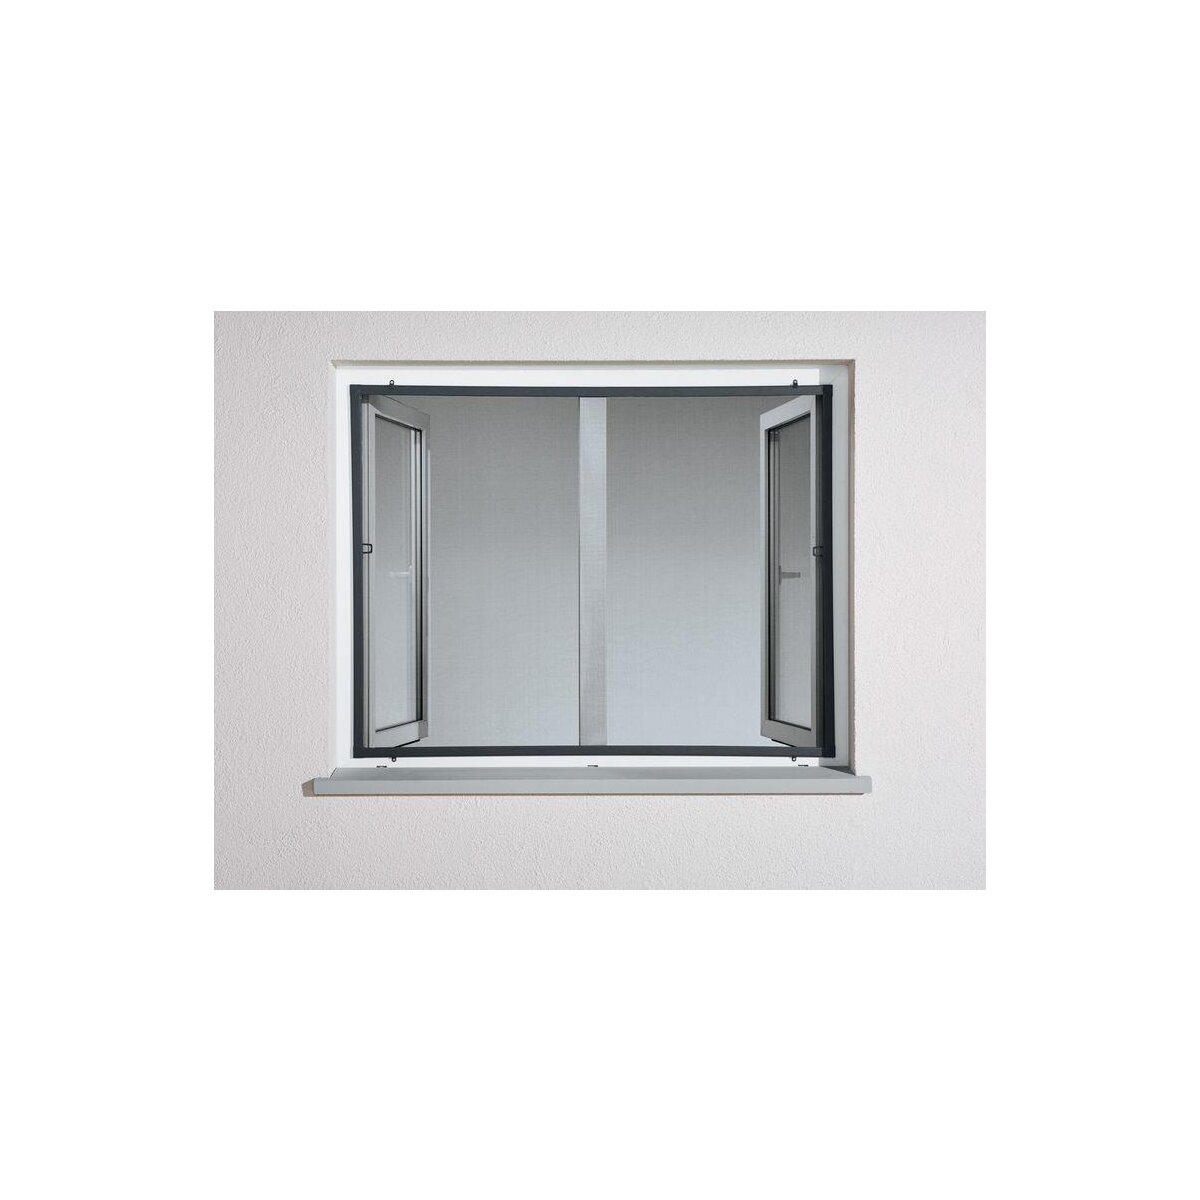 Fliegengitter Insektenschutz Fenster 100 x 120 cm Alu Rahmen B-Ware  einwandfrei anthrazit, 12,99 €